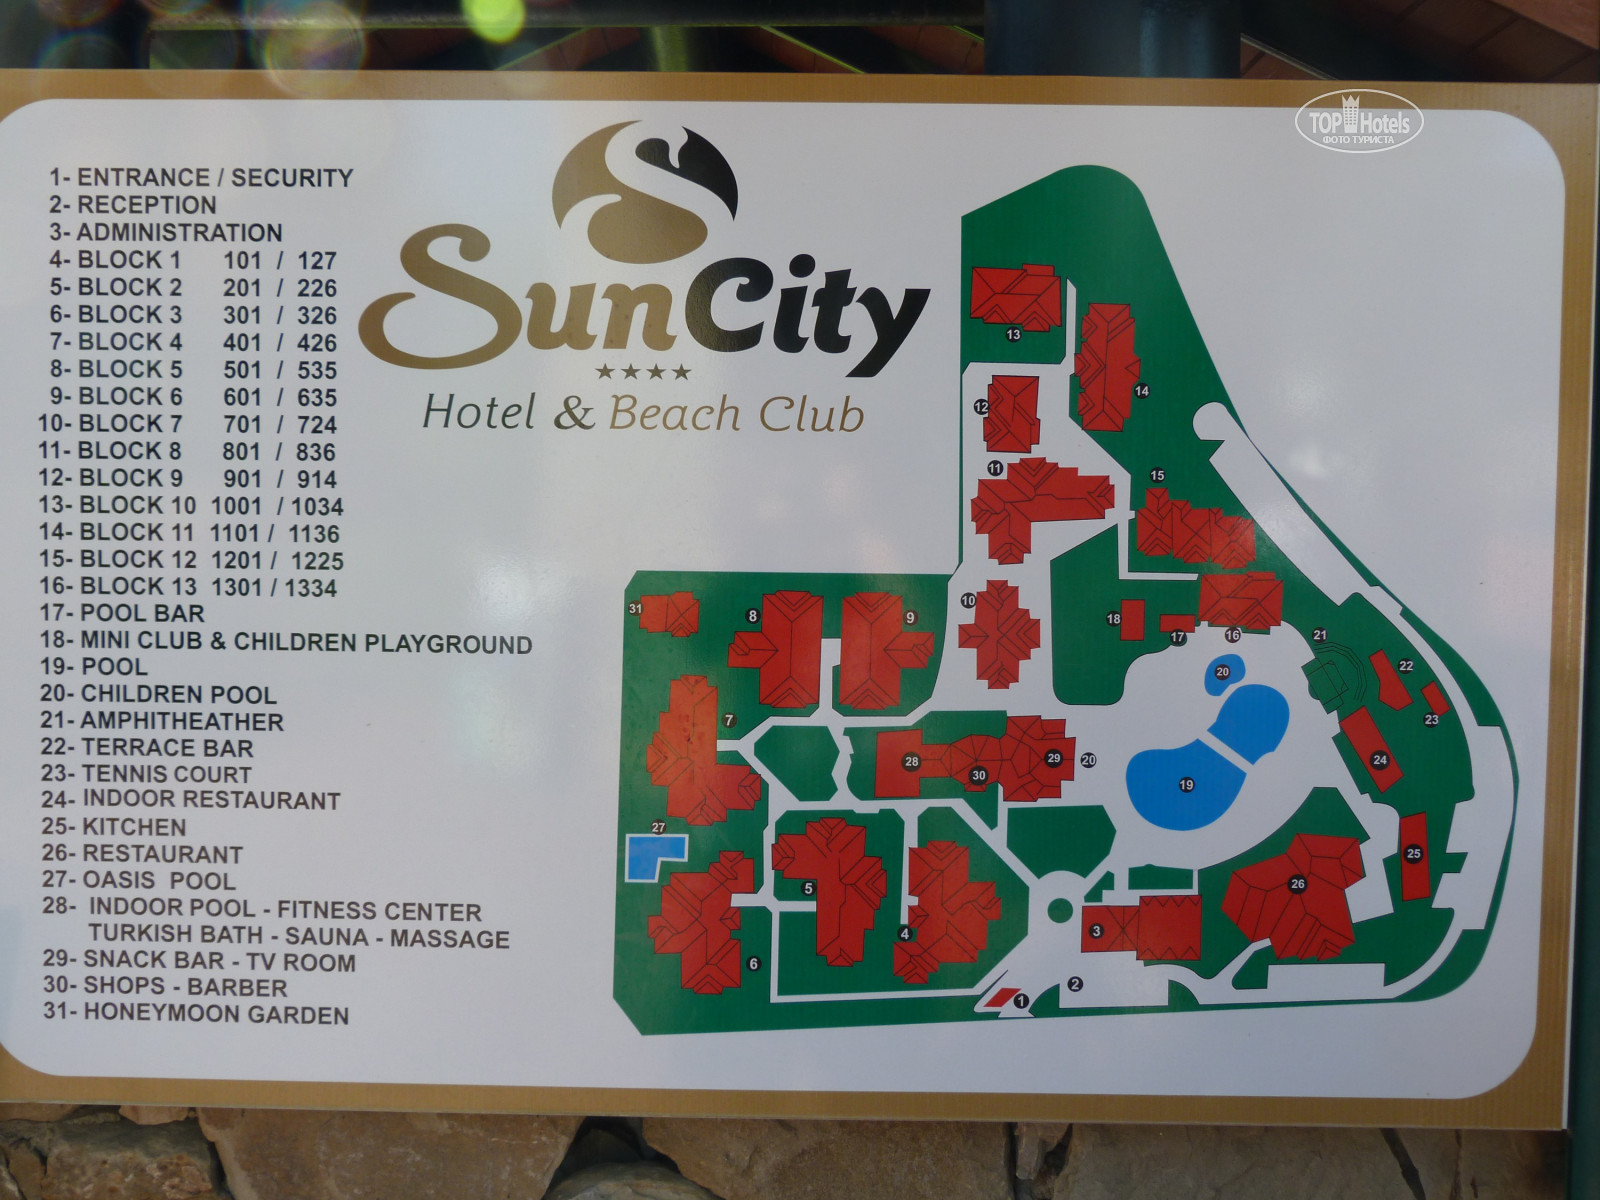 Suncity hotel beach club 4. Sun City Hotel & Beach Club. Sun City Hotel Олюдениз карта-схема. Sun City Hotel & Beach Club 4*. Utopia Beach Club карта отеля.